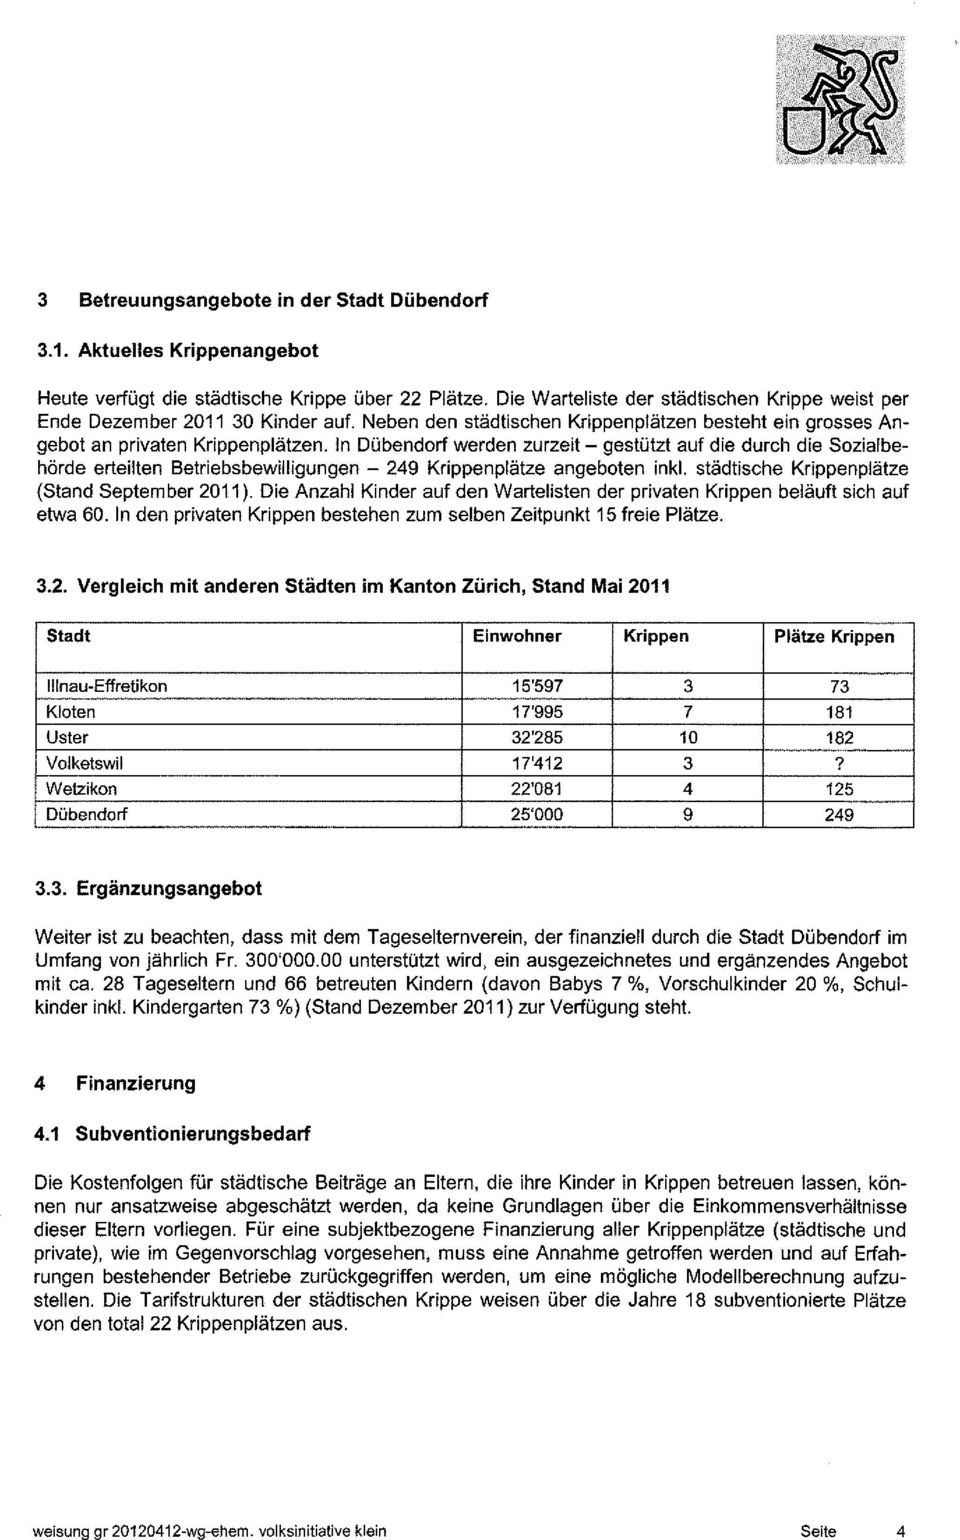 In Dübendorf werden zurzeit - gestützt auf die durch die Sozial behörde erteilten Betriebsbewilligungen - 249 Krippenplätze angeboten inkl. städtische Krippenplätze (Stand September 2011).